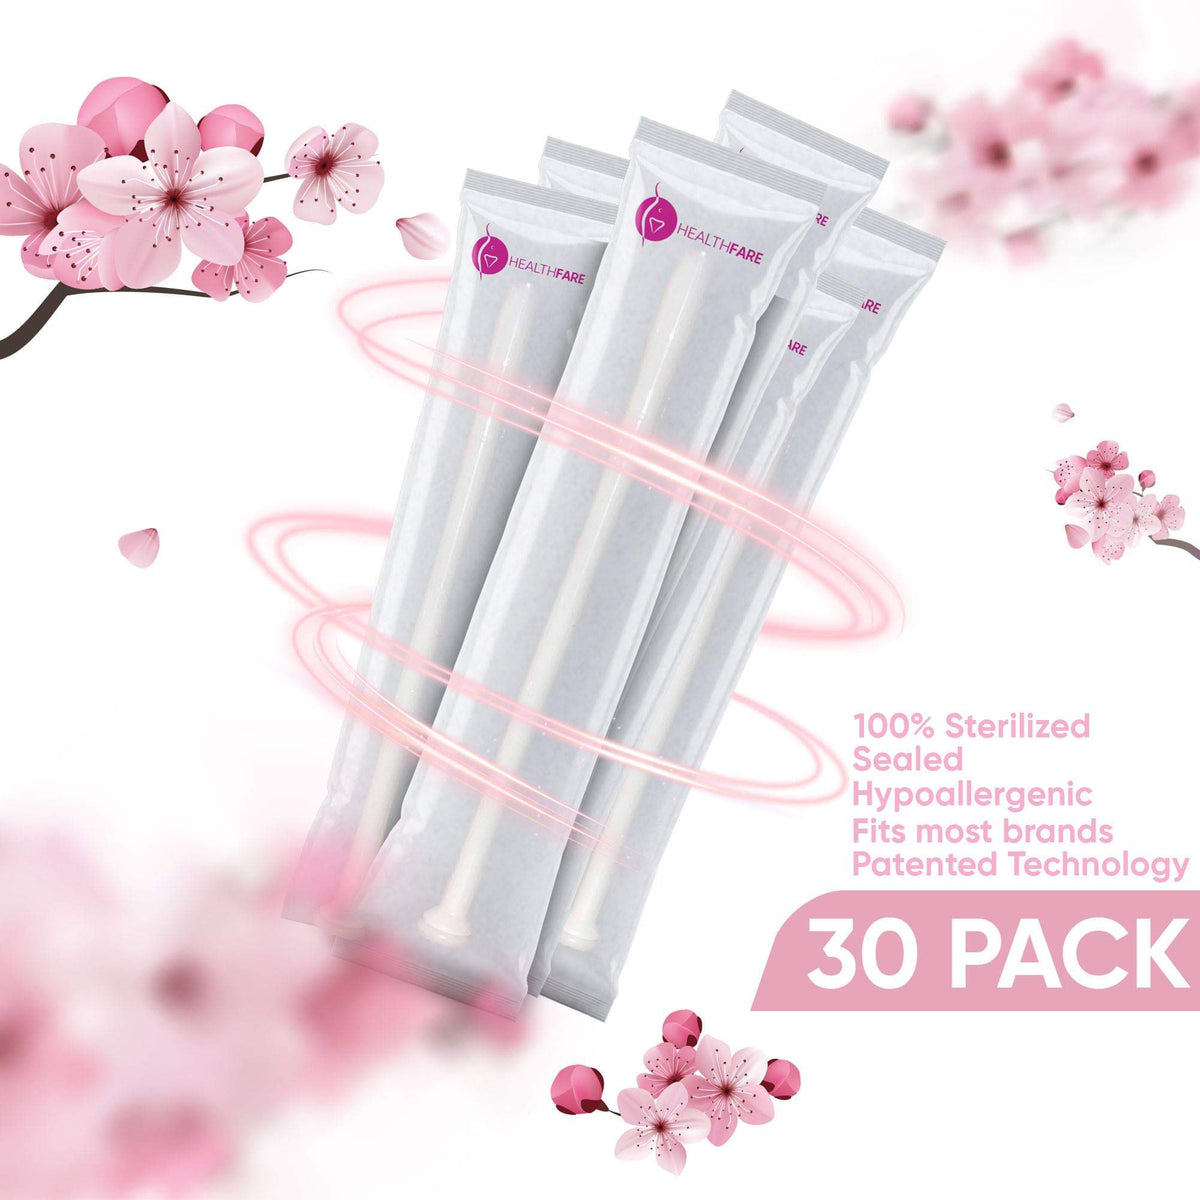 HealthFare Vaginal Applicators (30-Pack) - HealthFare